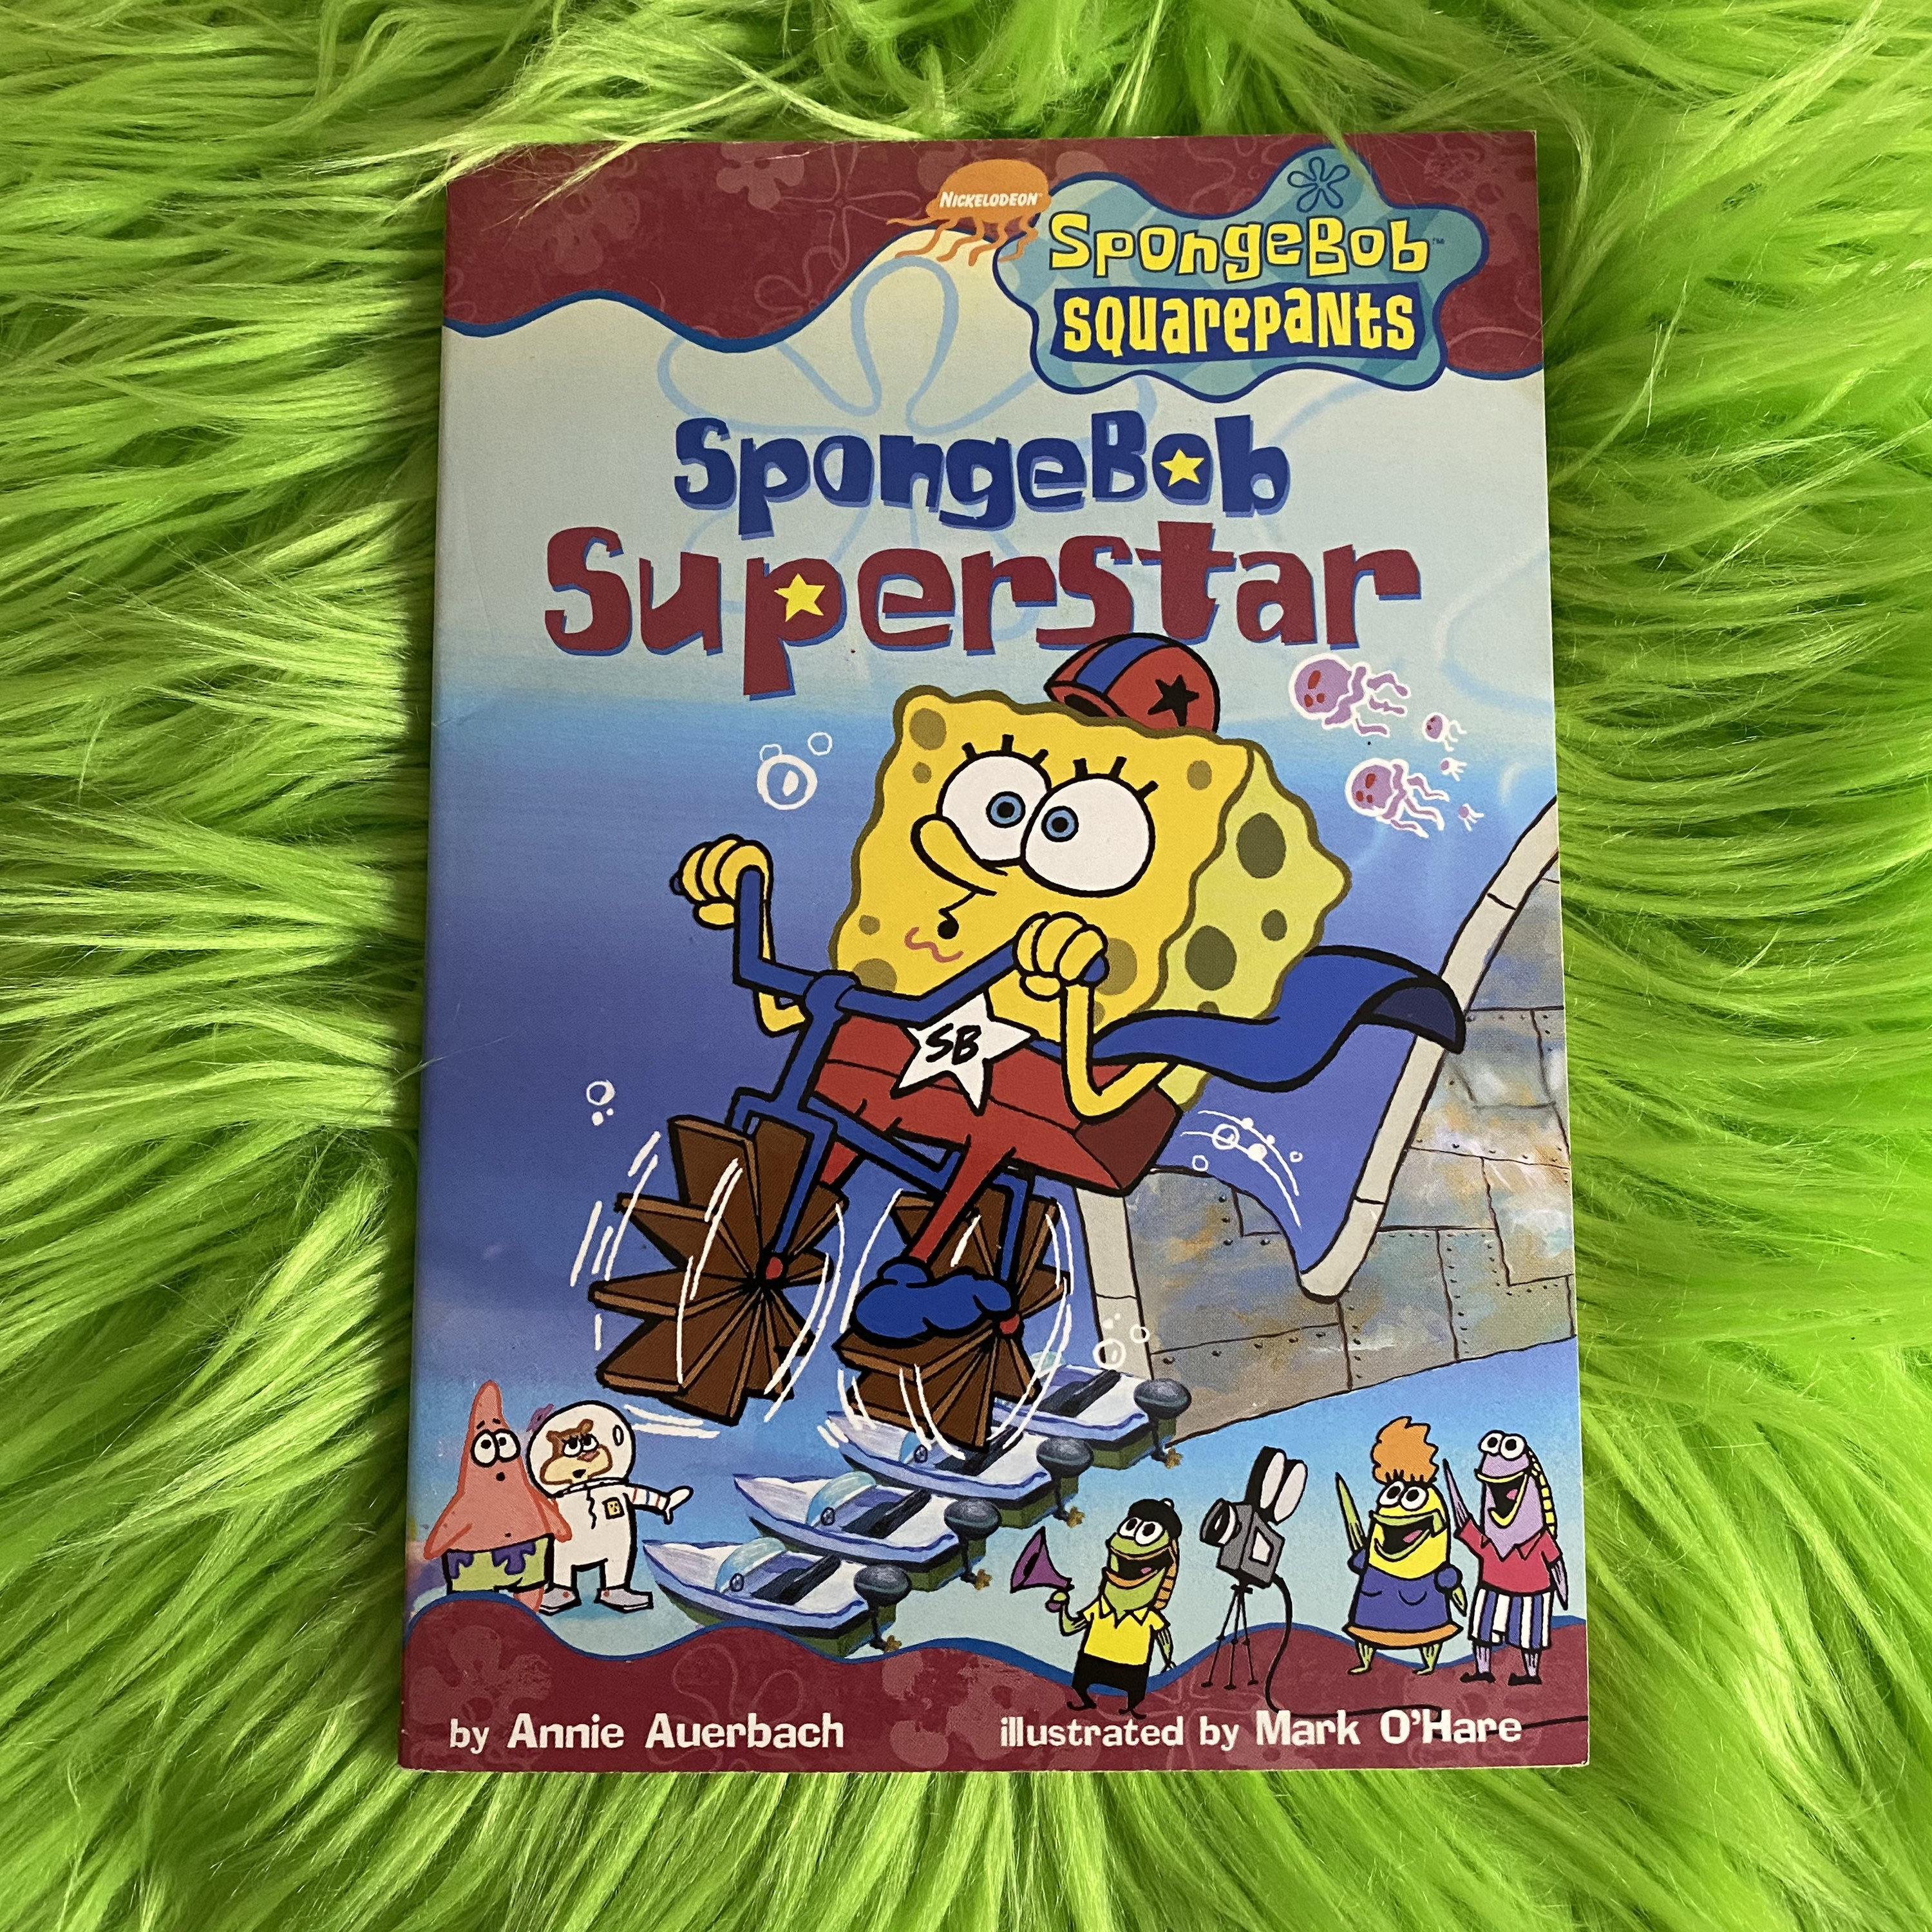 SPONGEBOB'S SLAP SHOT (Nickelodean SpongeBob Squarepants)